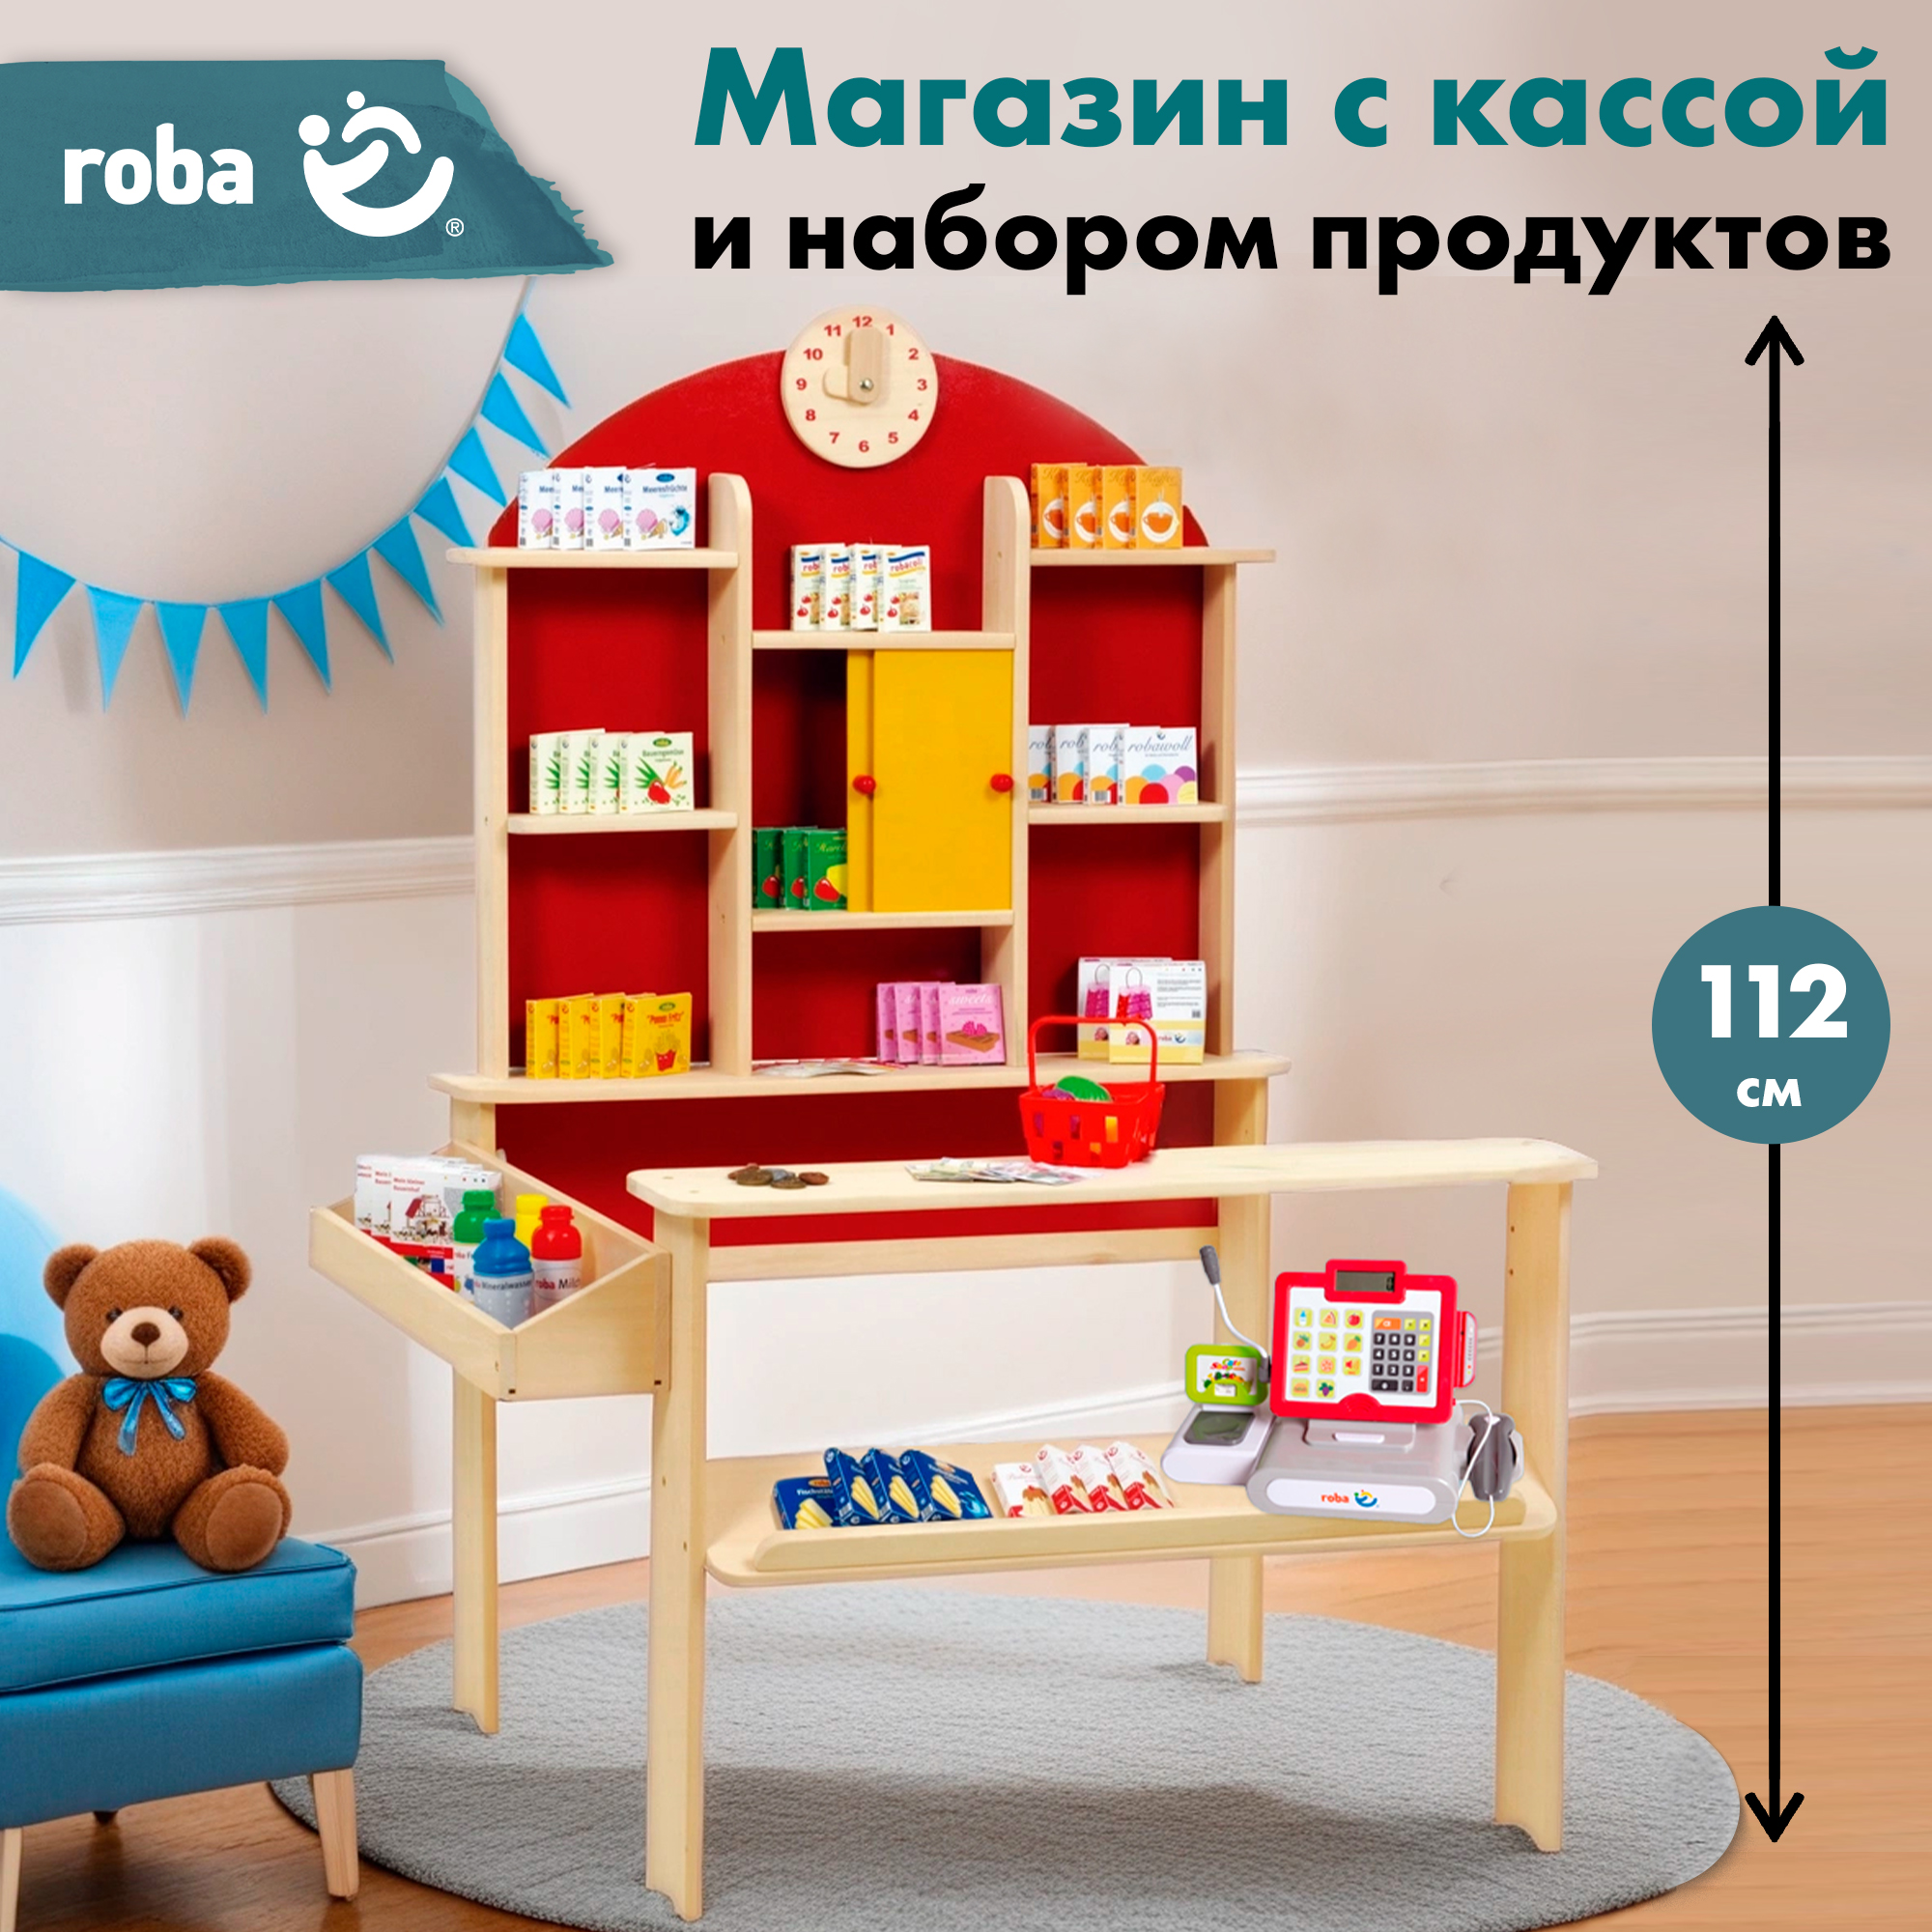 Детский магазин Roba игровой набор: супермаркет с игрушечными продуктами и кассой набор навесных полок 45х9х3 см 2 шт черное butler 011 12 115651